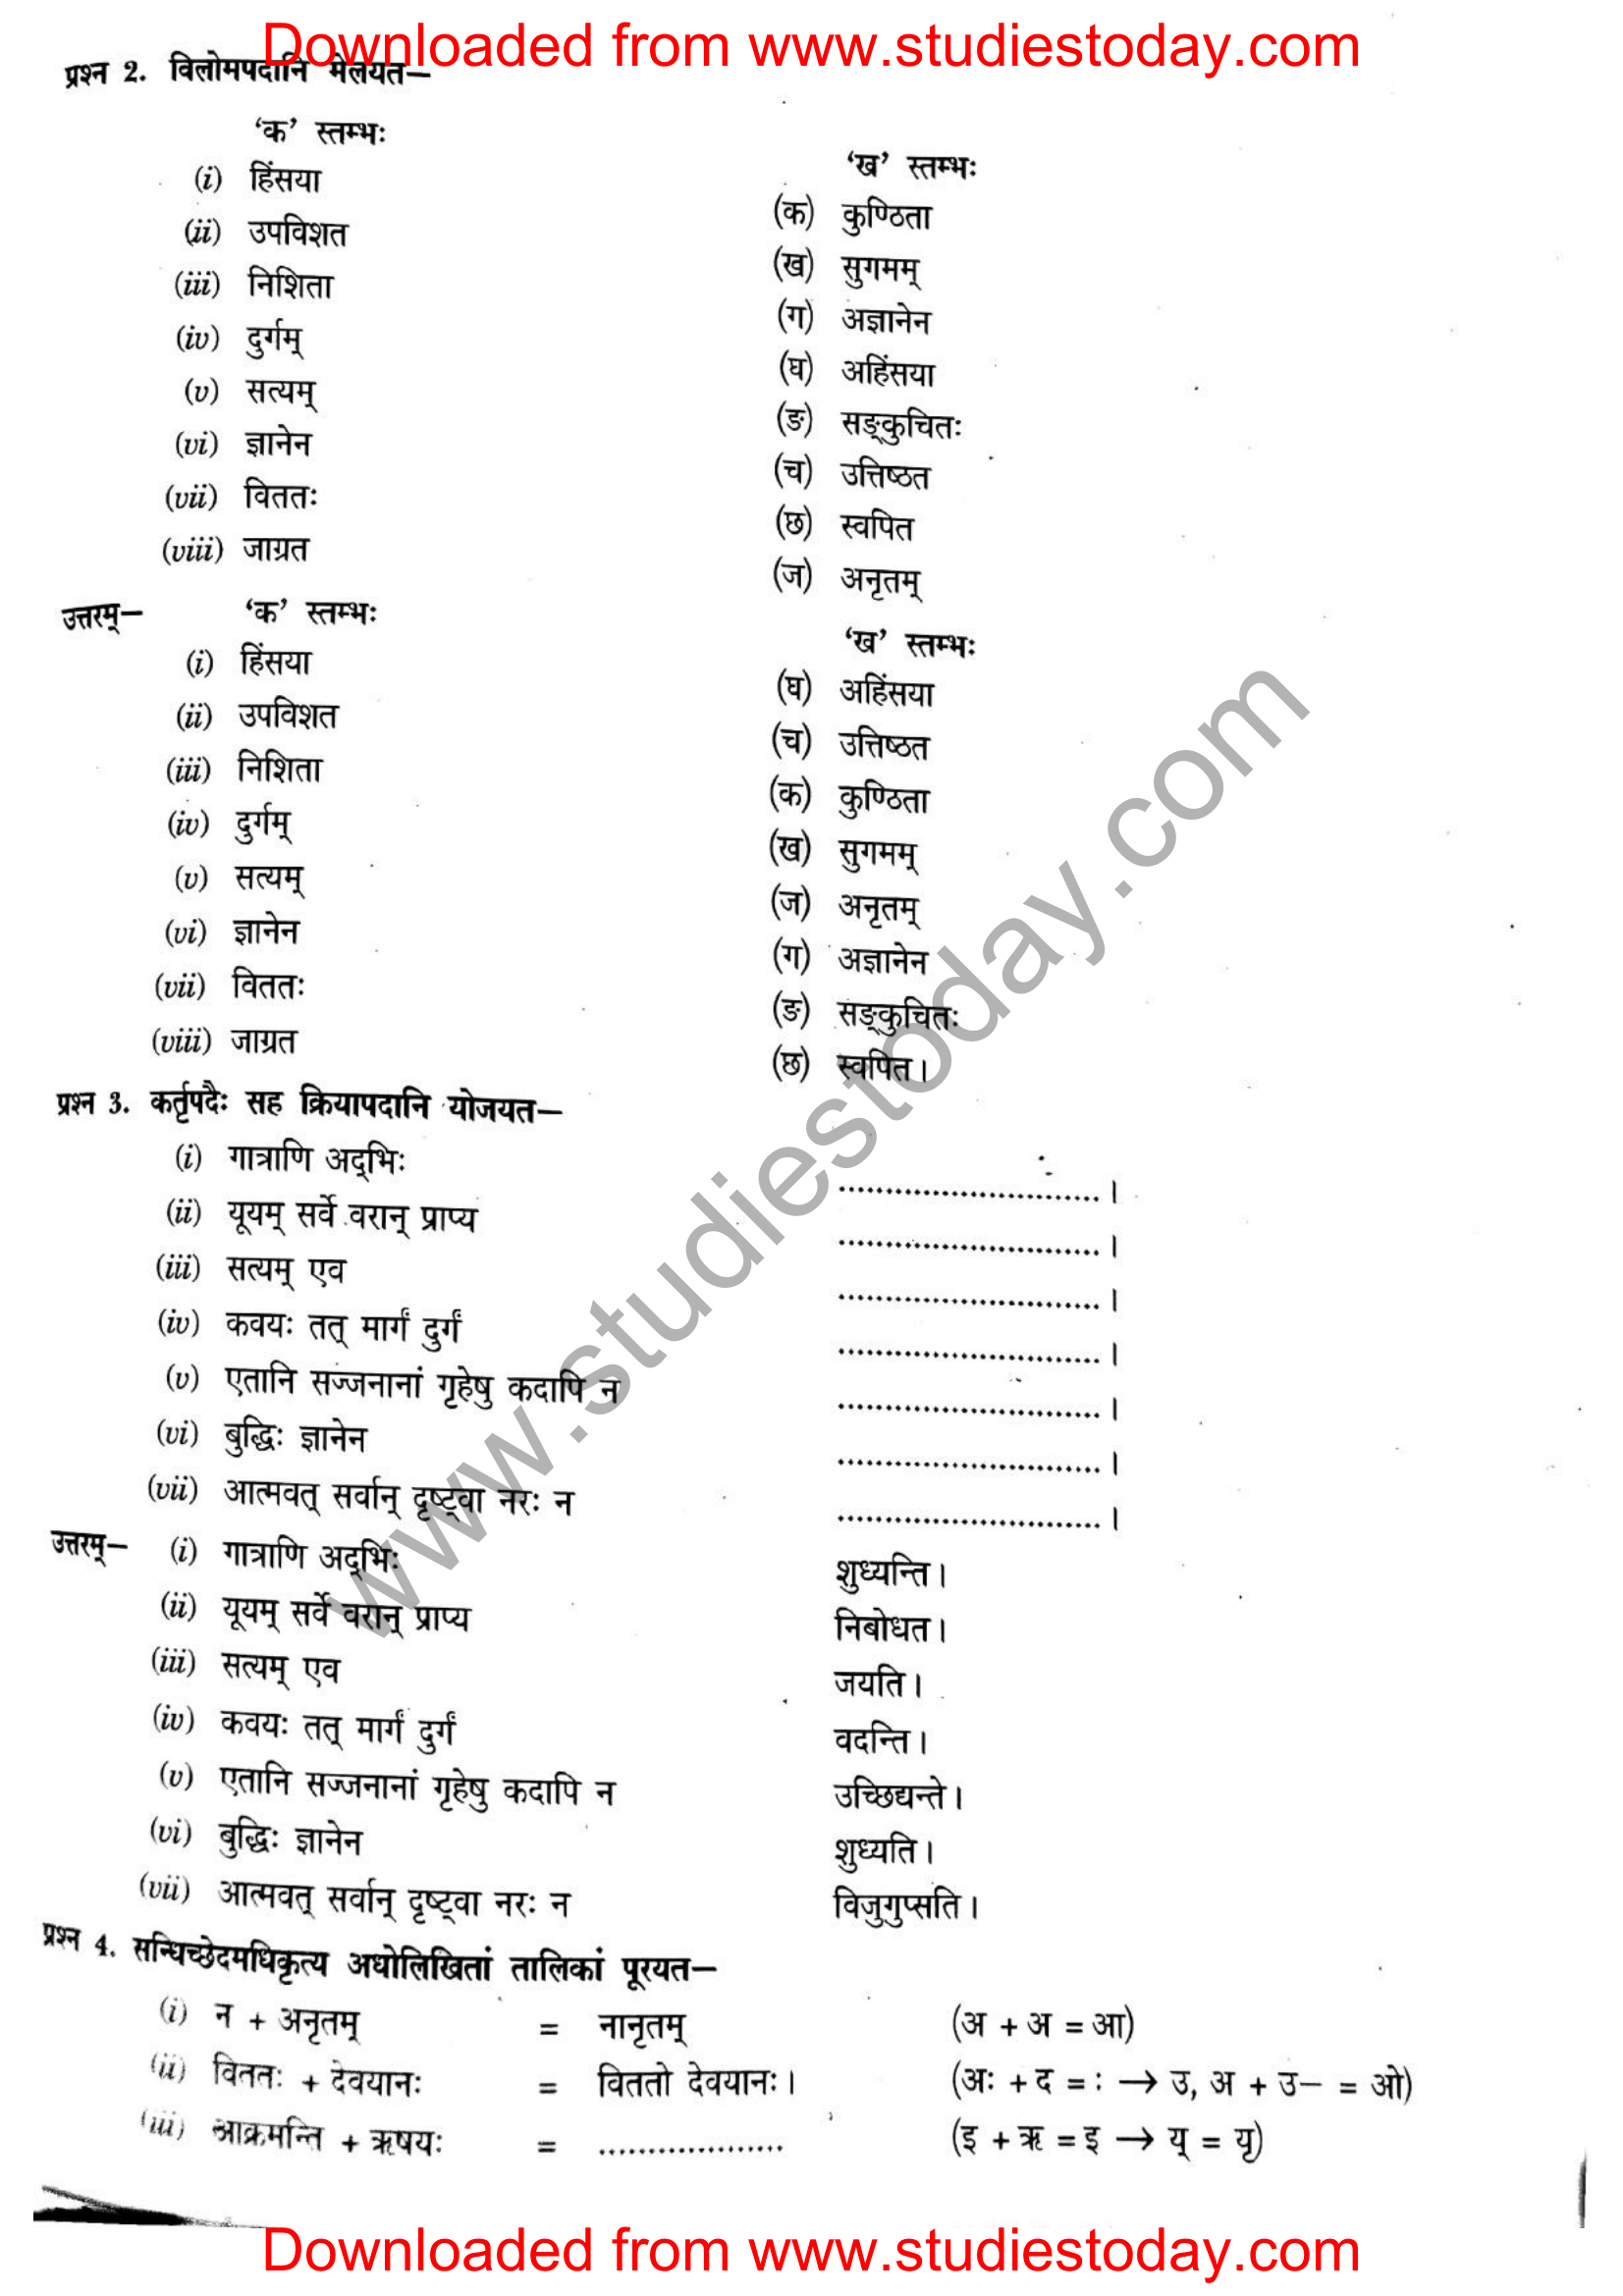 ncert-solutions-class-12-sanskrit-ritikia-chapter-1-05